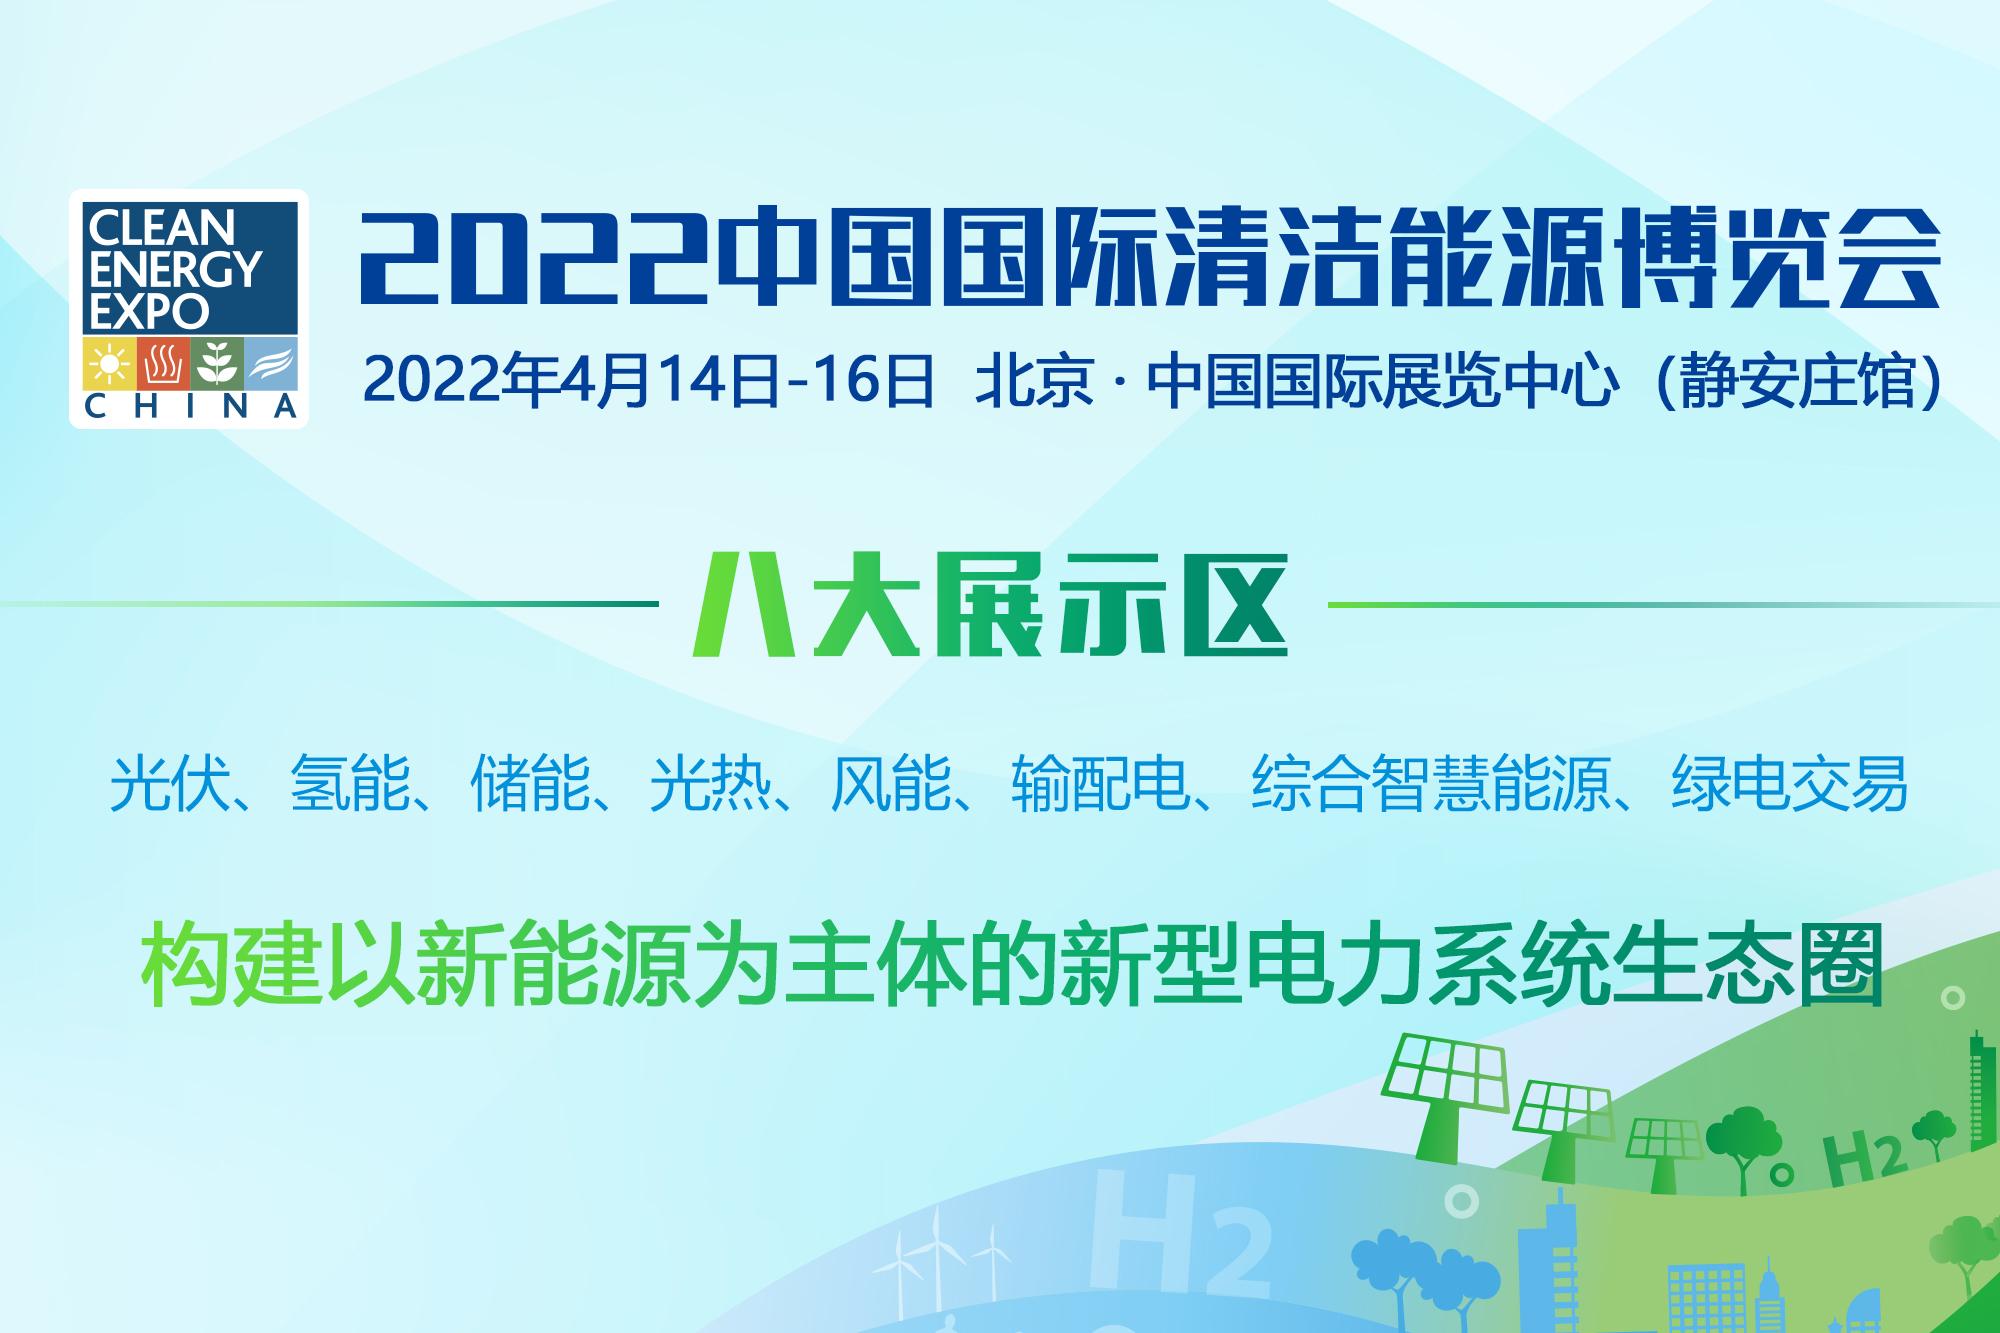 中电联联合中国建设贸促会等单位邀您参加2022中国国际清洁能源博览会